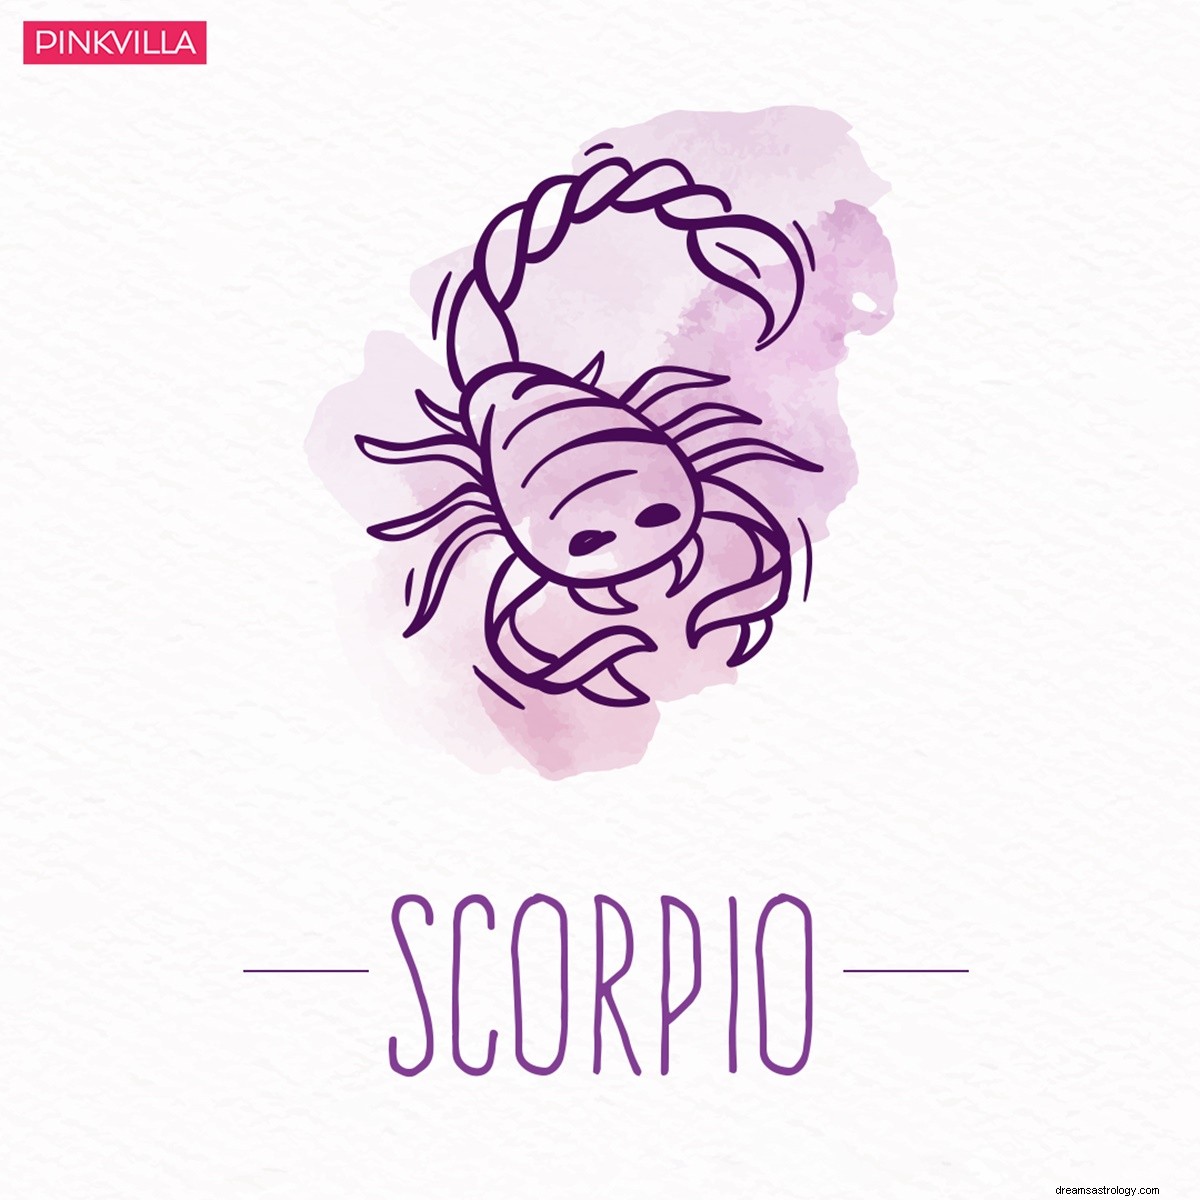 Escorpio a Leo:4 signos del zodiaco que son desconfiados y a menudo violentos 